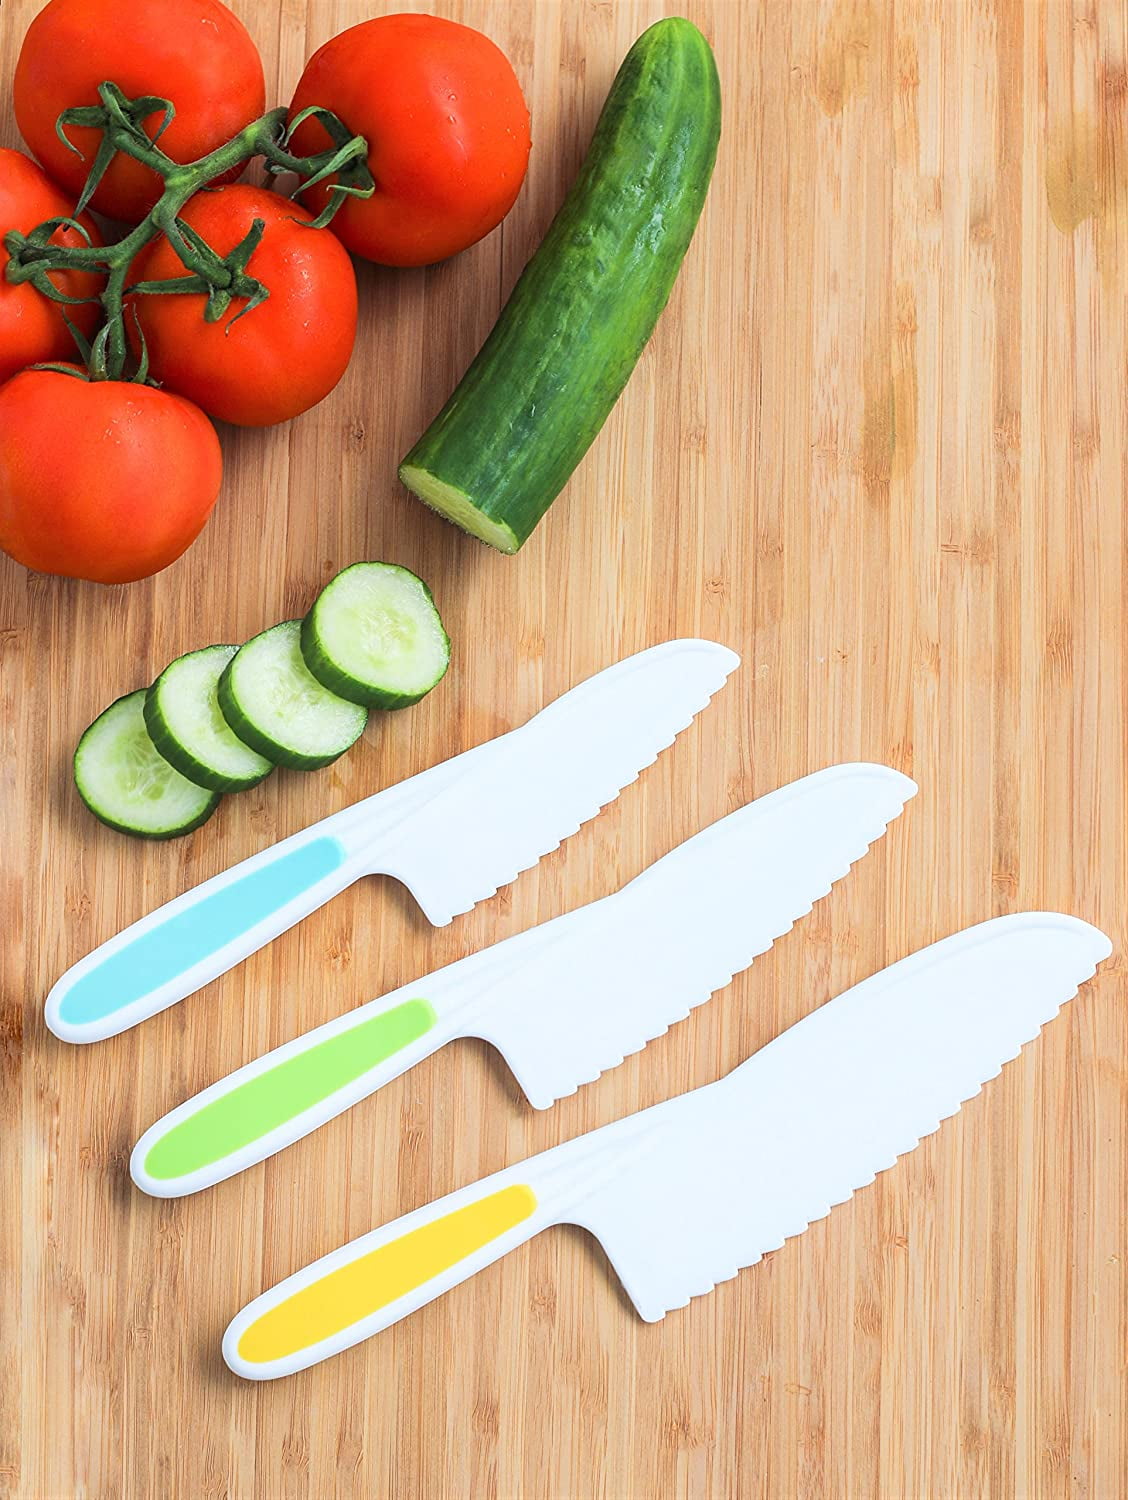 Nogis 3Pcs Kids Plastic Knife Set,BPA-Free Children's Safe Cooking Knife  Set (Ages 4-12)&Cutting Board for Fruit,Salad